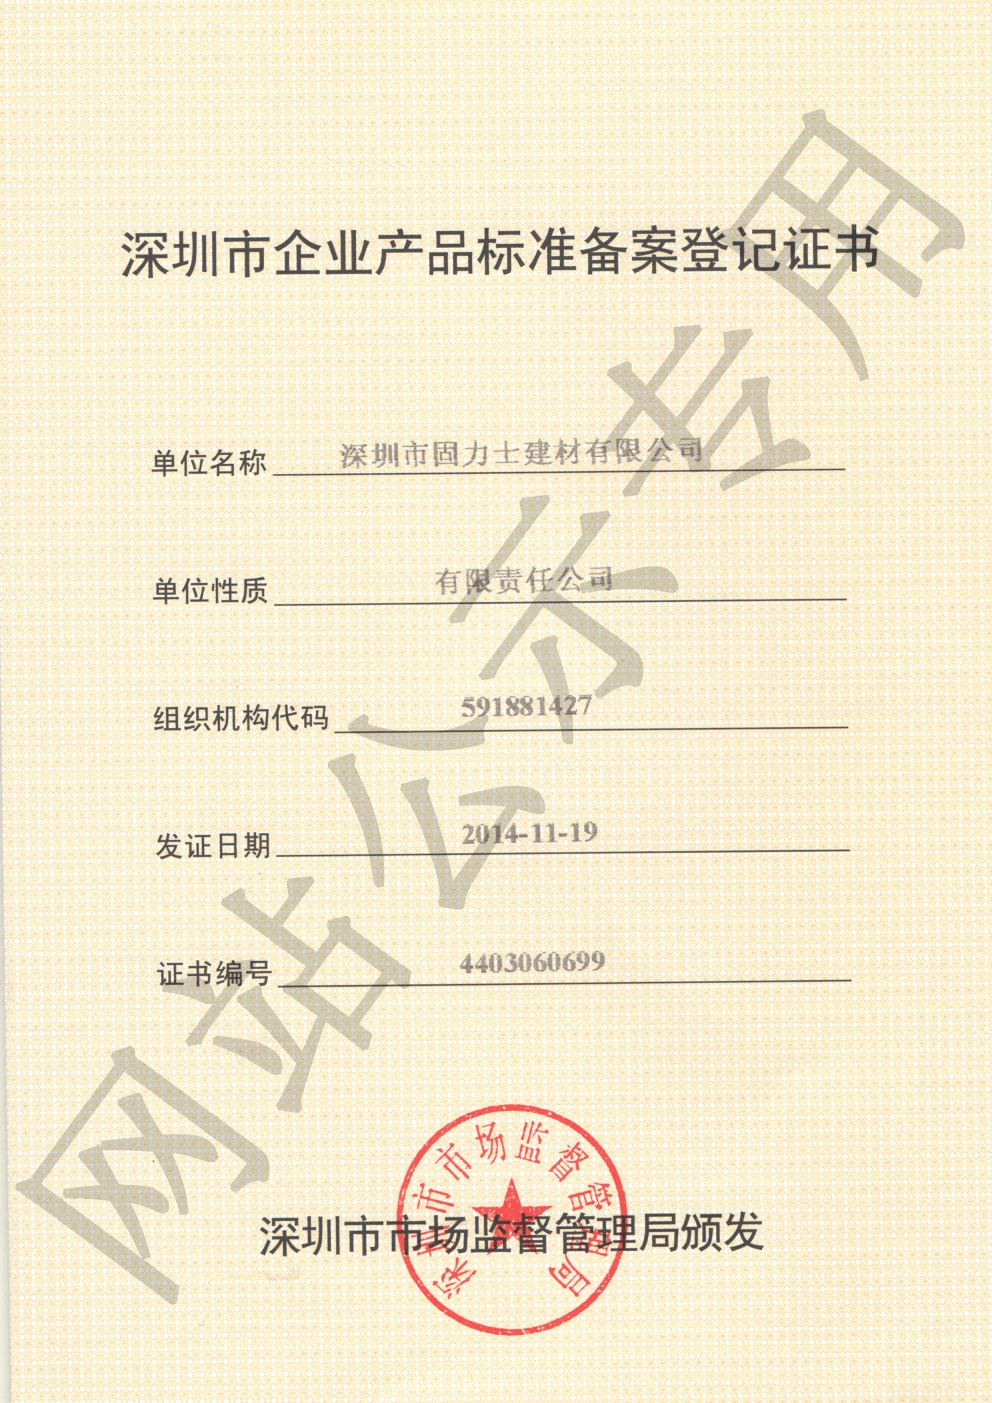 土默特右企业产品标准登记证书